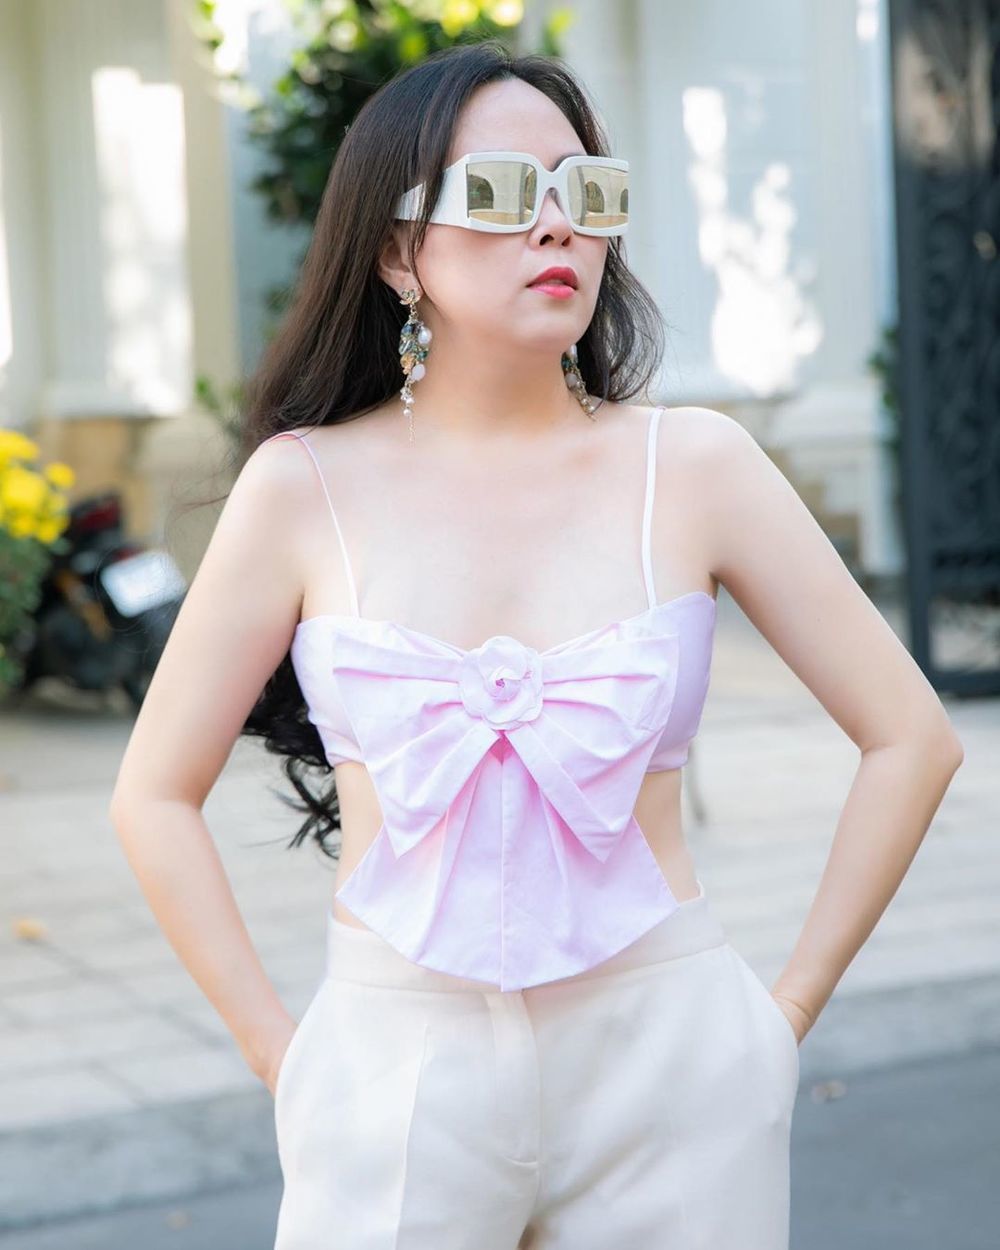 Phượng Chanel khoe vòng 1 siêu khủng với bikini hậu chia tay Quách Ngọc  Ngoan  2sao